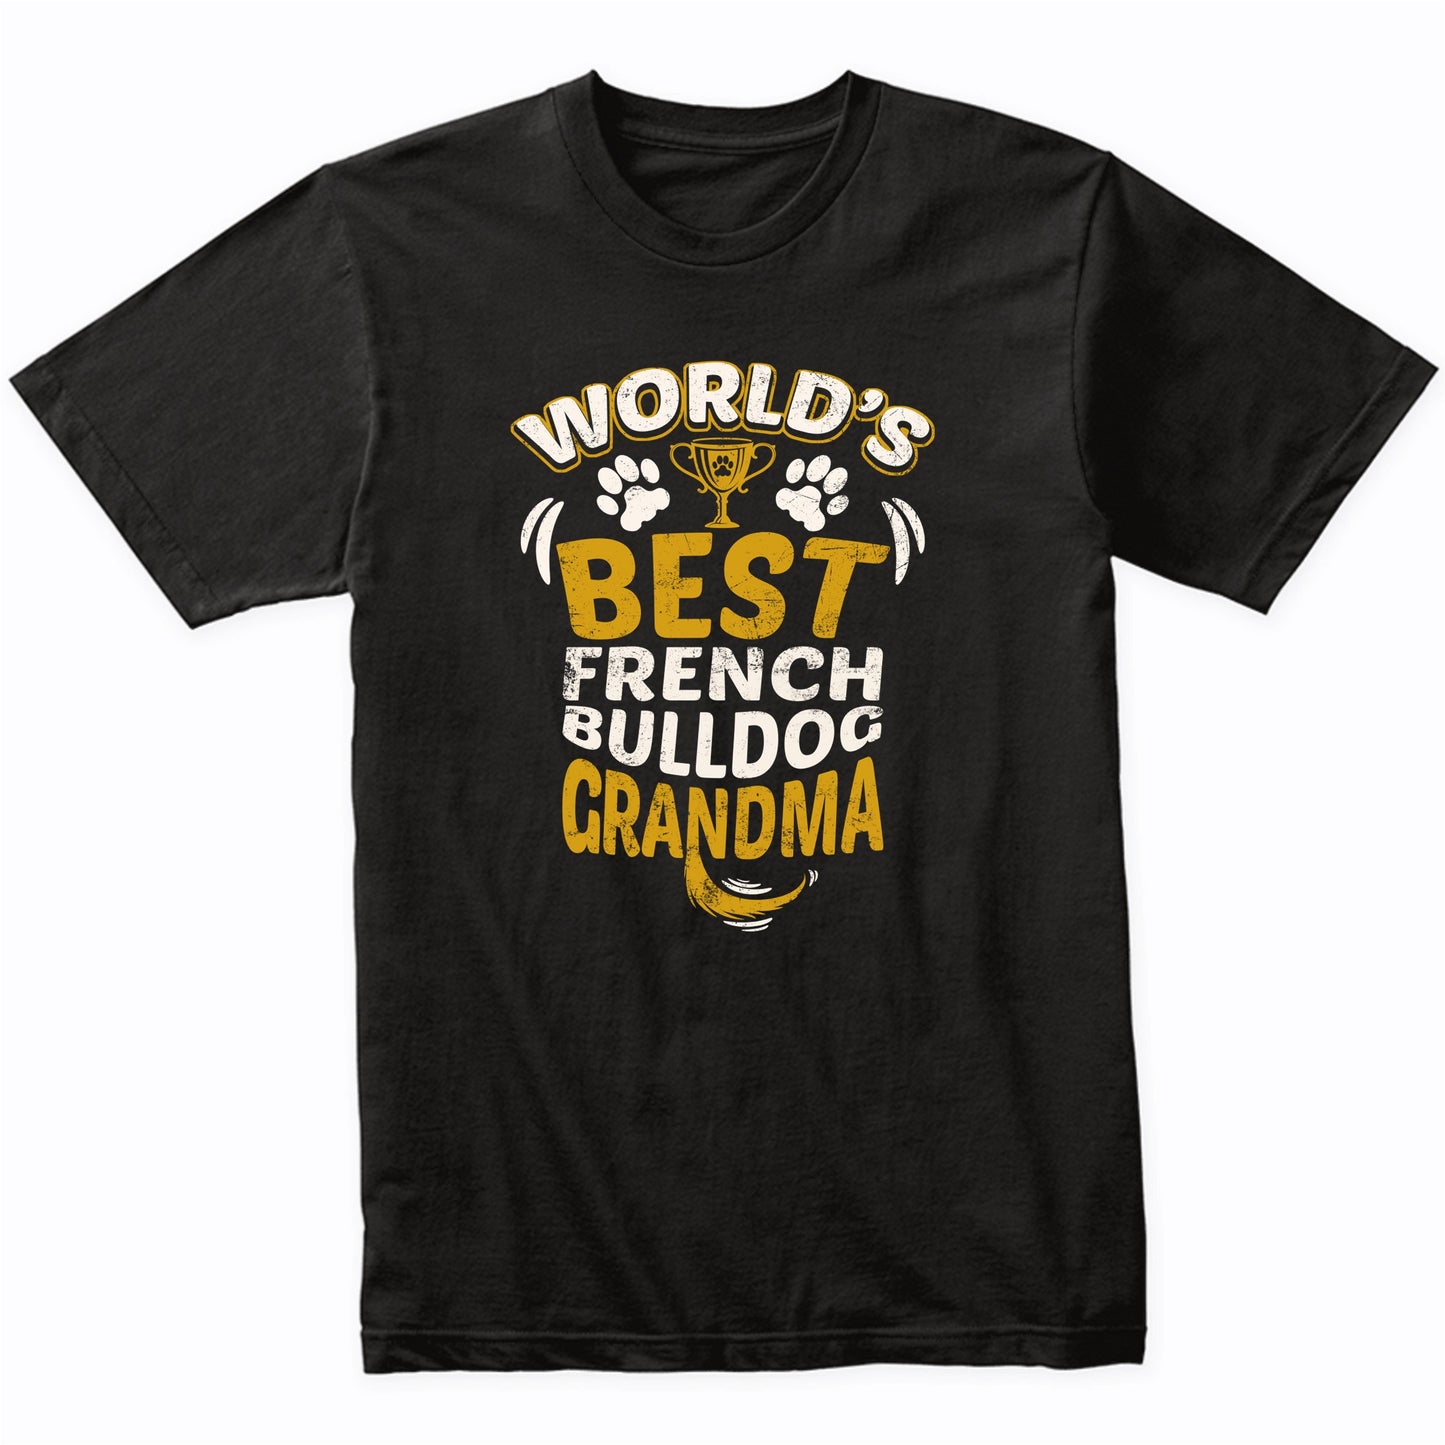 World's Best French Bulldog Grandma Graphic T-Shirt